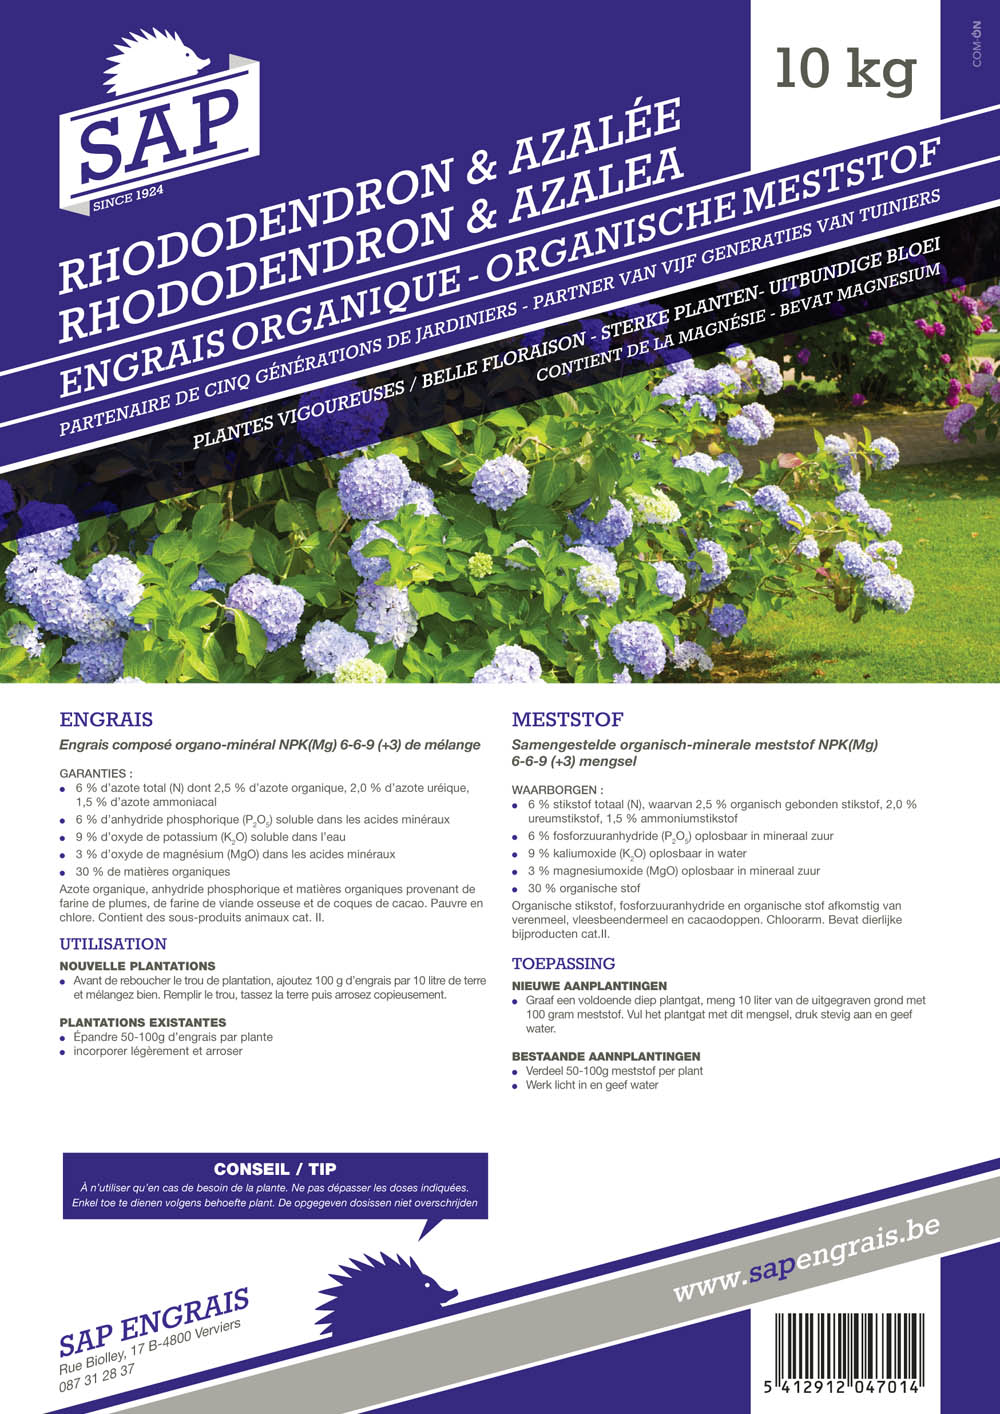 Engrais SAP Rhododendrons et azalées 10kg